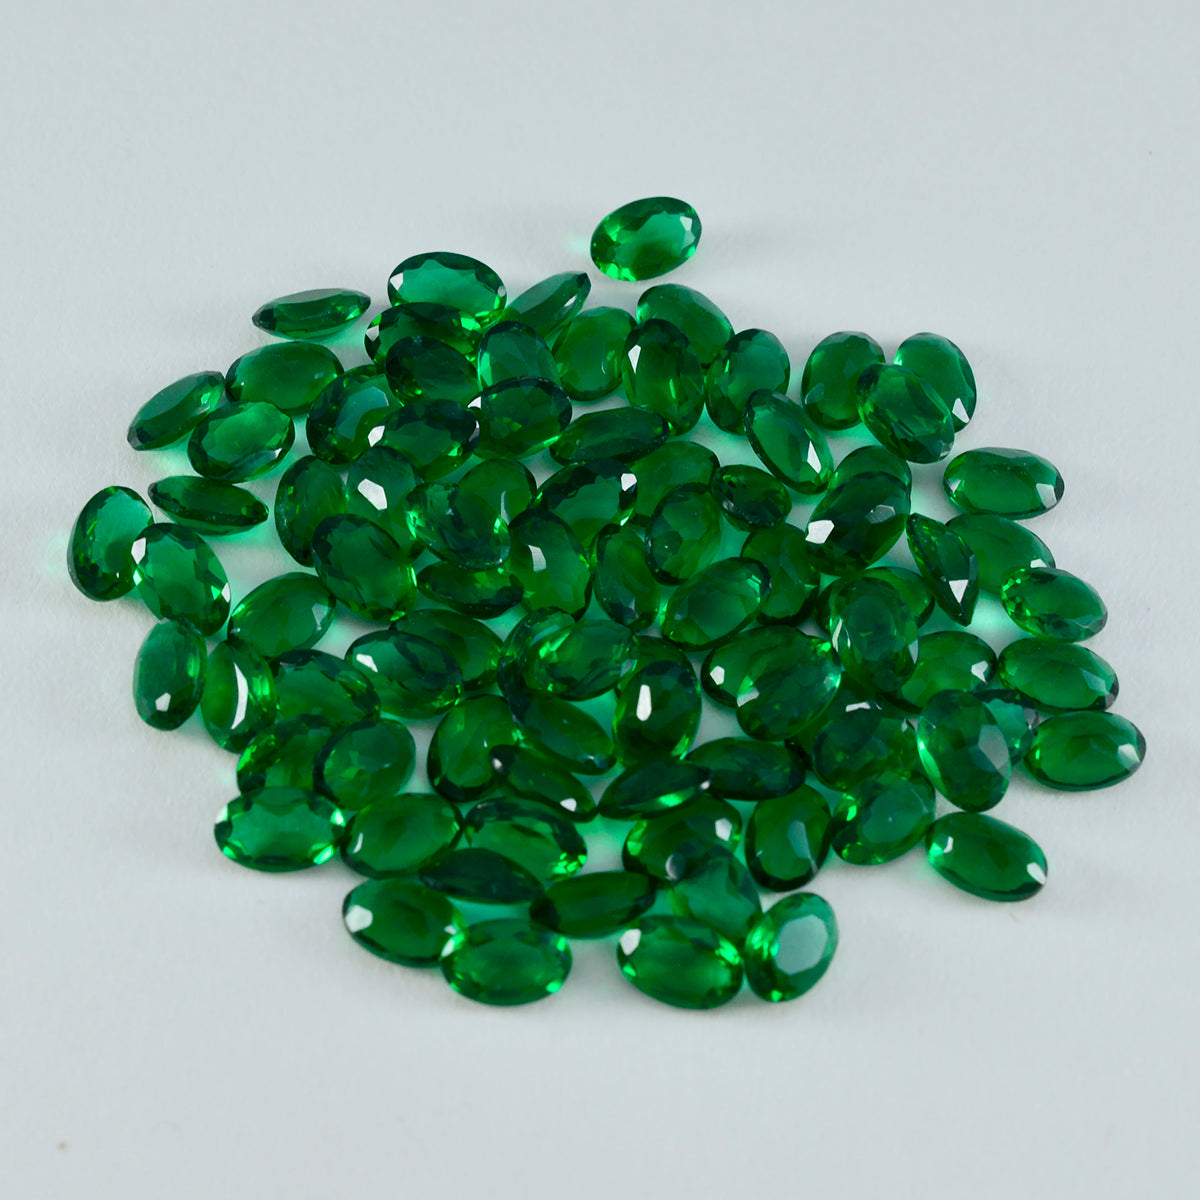 Riyogems 1 Stück grüner Smaragd, CZ, facettiert, 3 x 5 mm, ovale Form, schöne Qualität, loser Edelstein